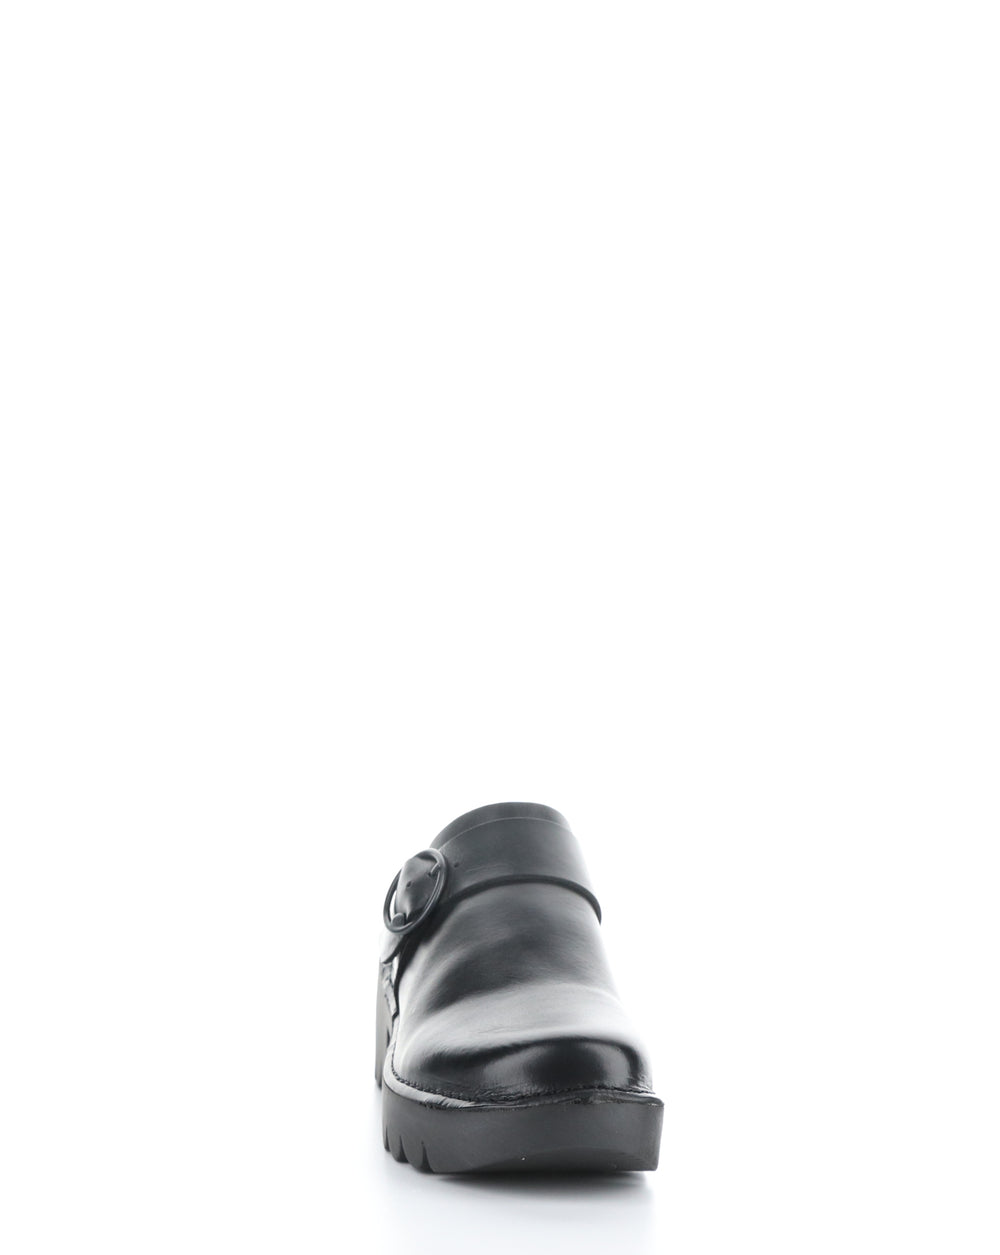 ENDA510FLY 005 BLACK Slip-on Shoes